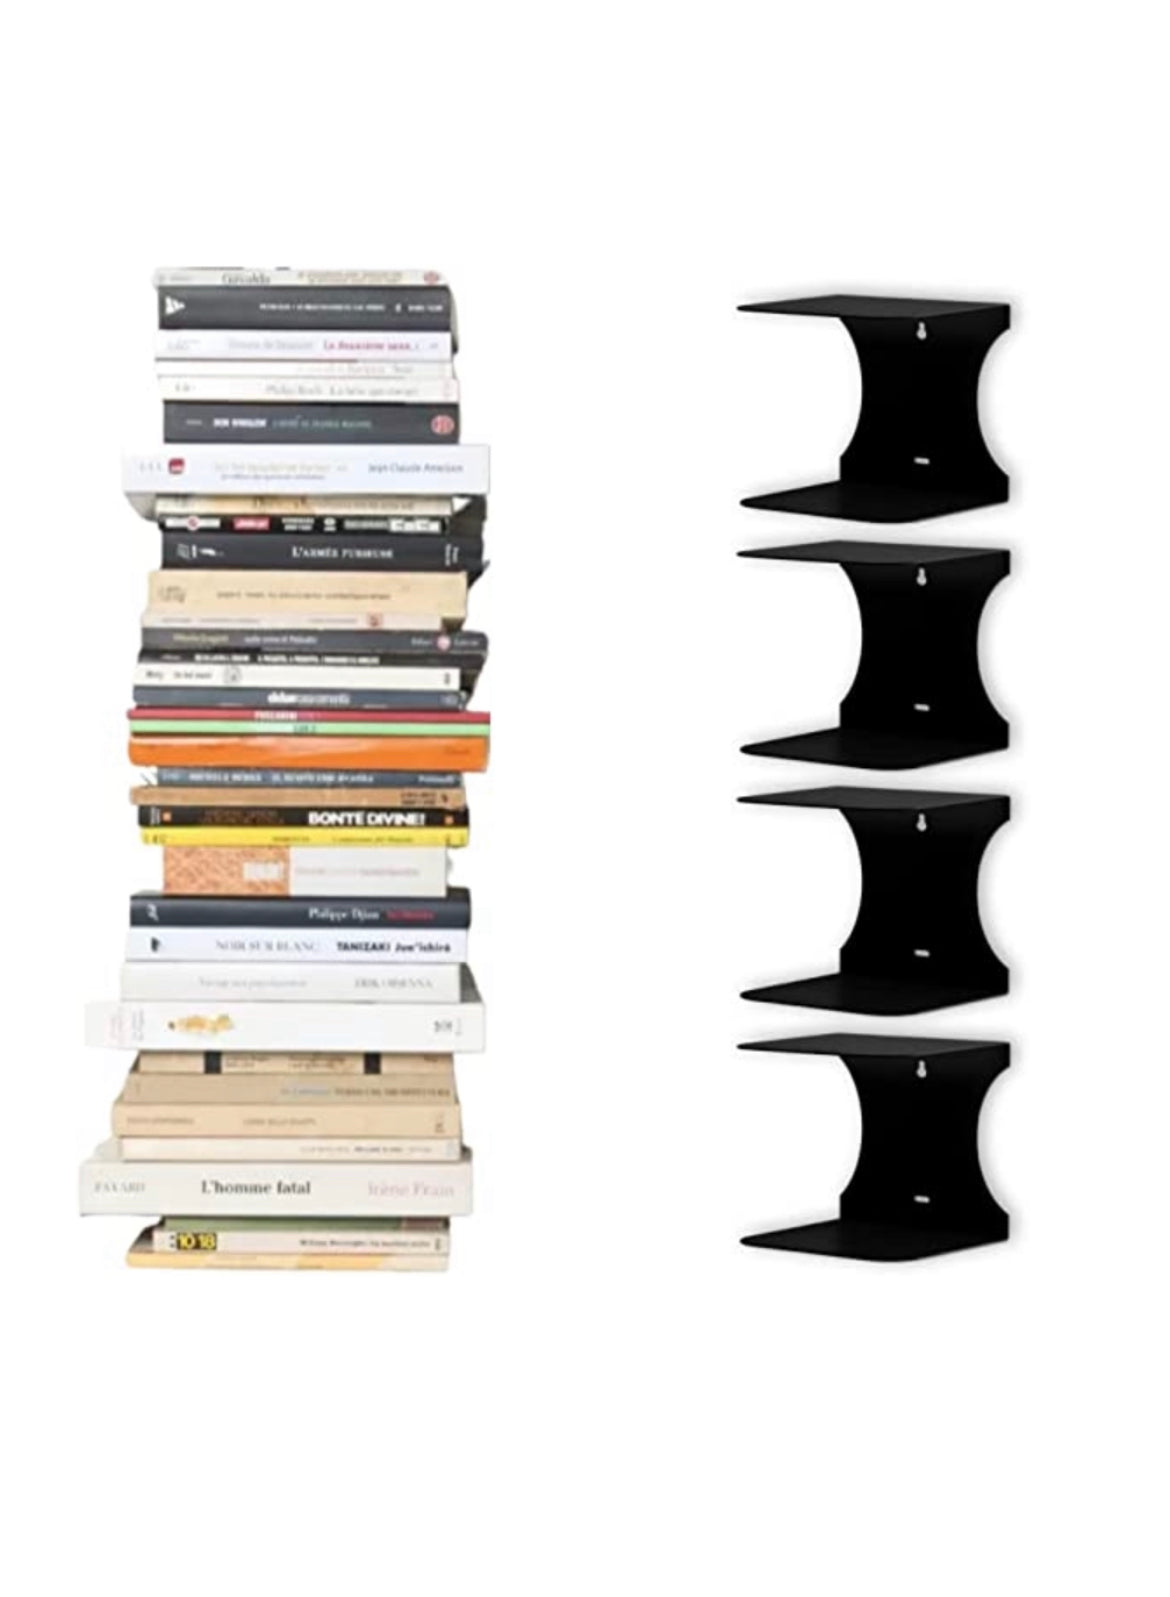 Mensole libreria a scomparsa invisibili,più Grandi colore: Nero, per mettere i libri più Grandi in pila  (4)